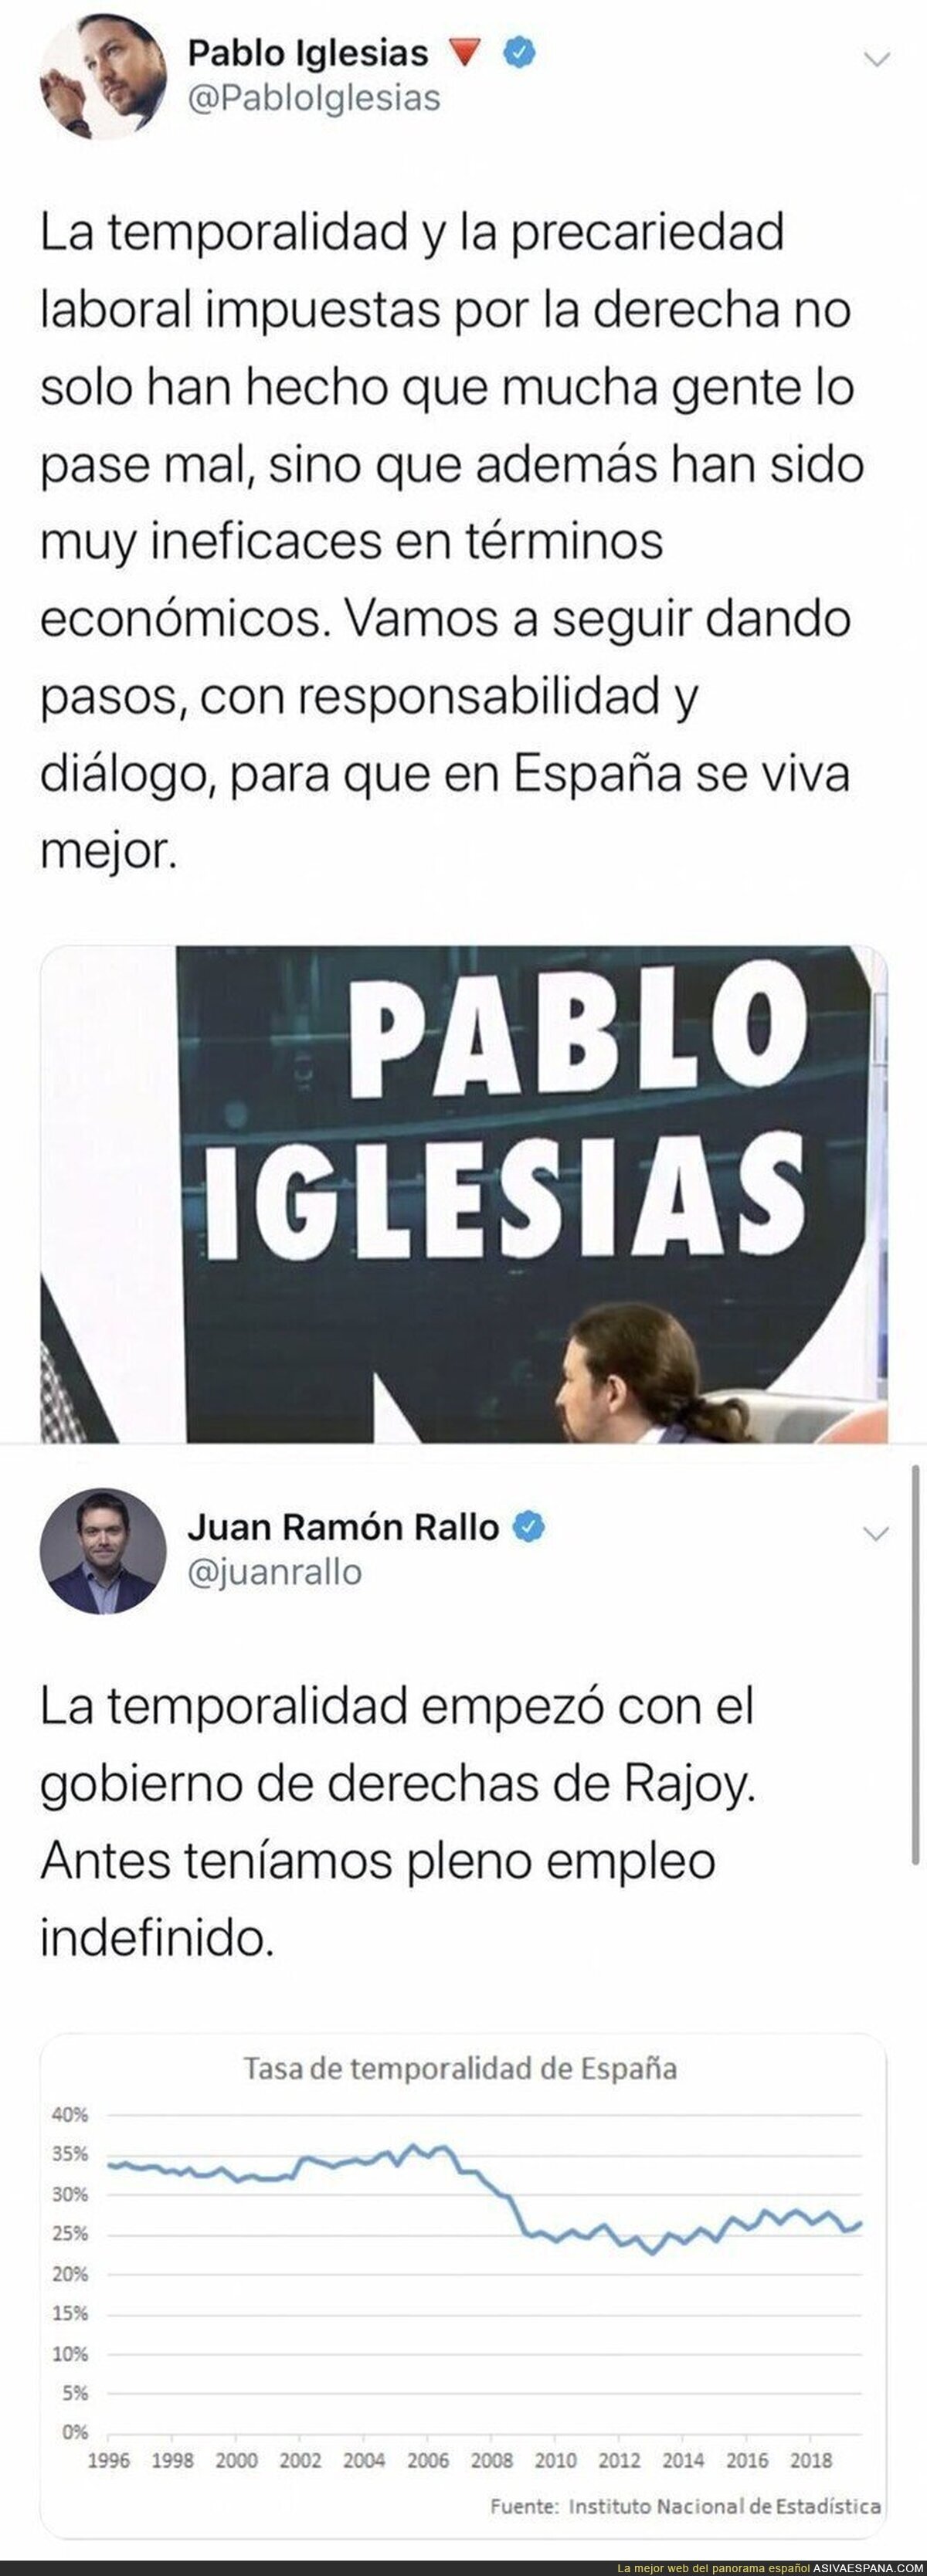 Juan Ramón Rallo desmona a Pablo Iglesias con los datos de temporalidad